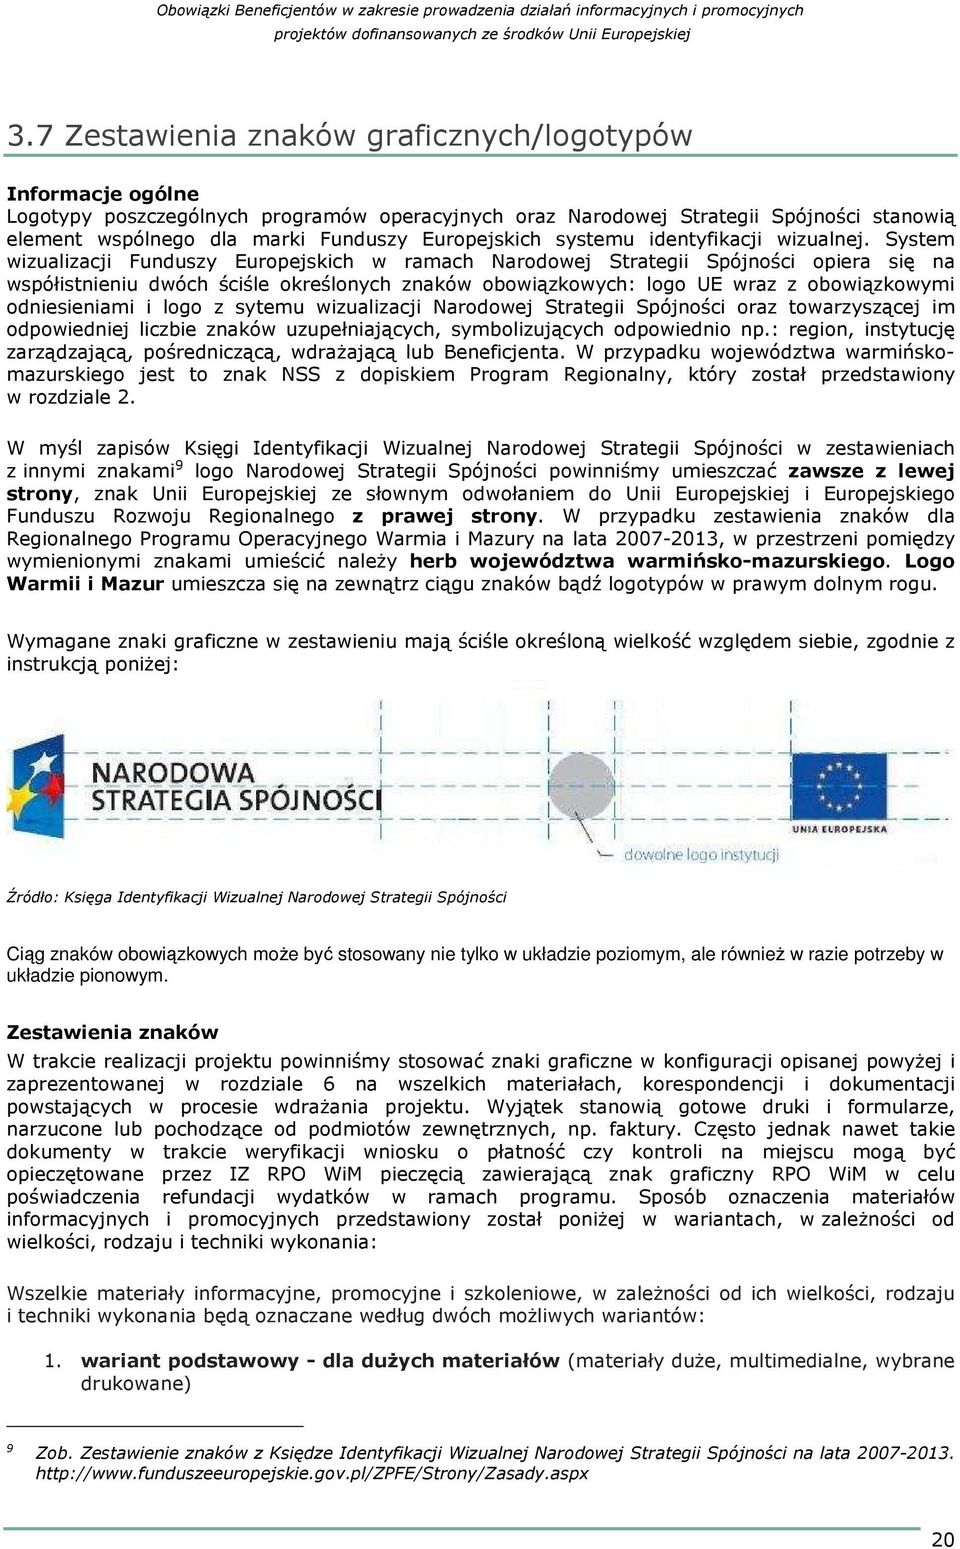 System wizualizacji Funduszy Europejskich w ramach Narodowej Strategii Spójności opiera się na współistnieniu dwóch ściśle określonych znaków obowiązkowych: logo UE wraz z obowiązkowymi odniesieniami